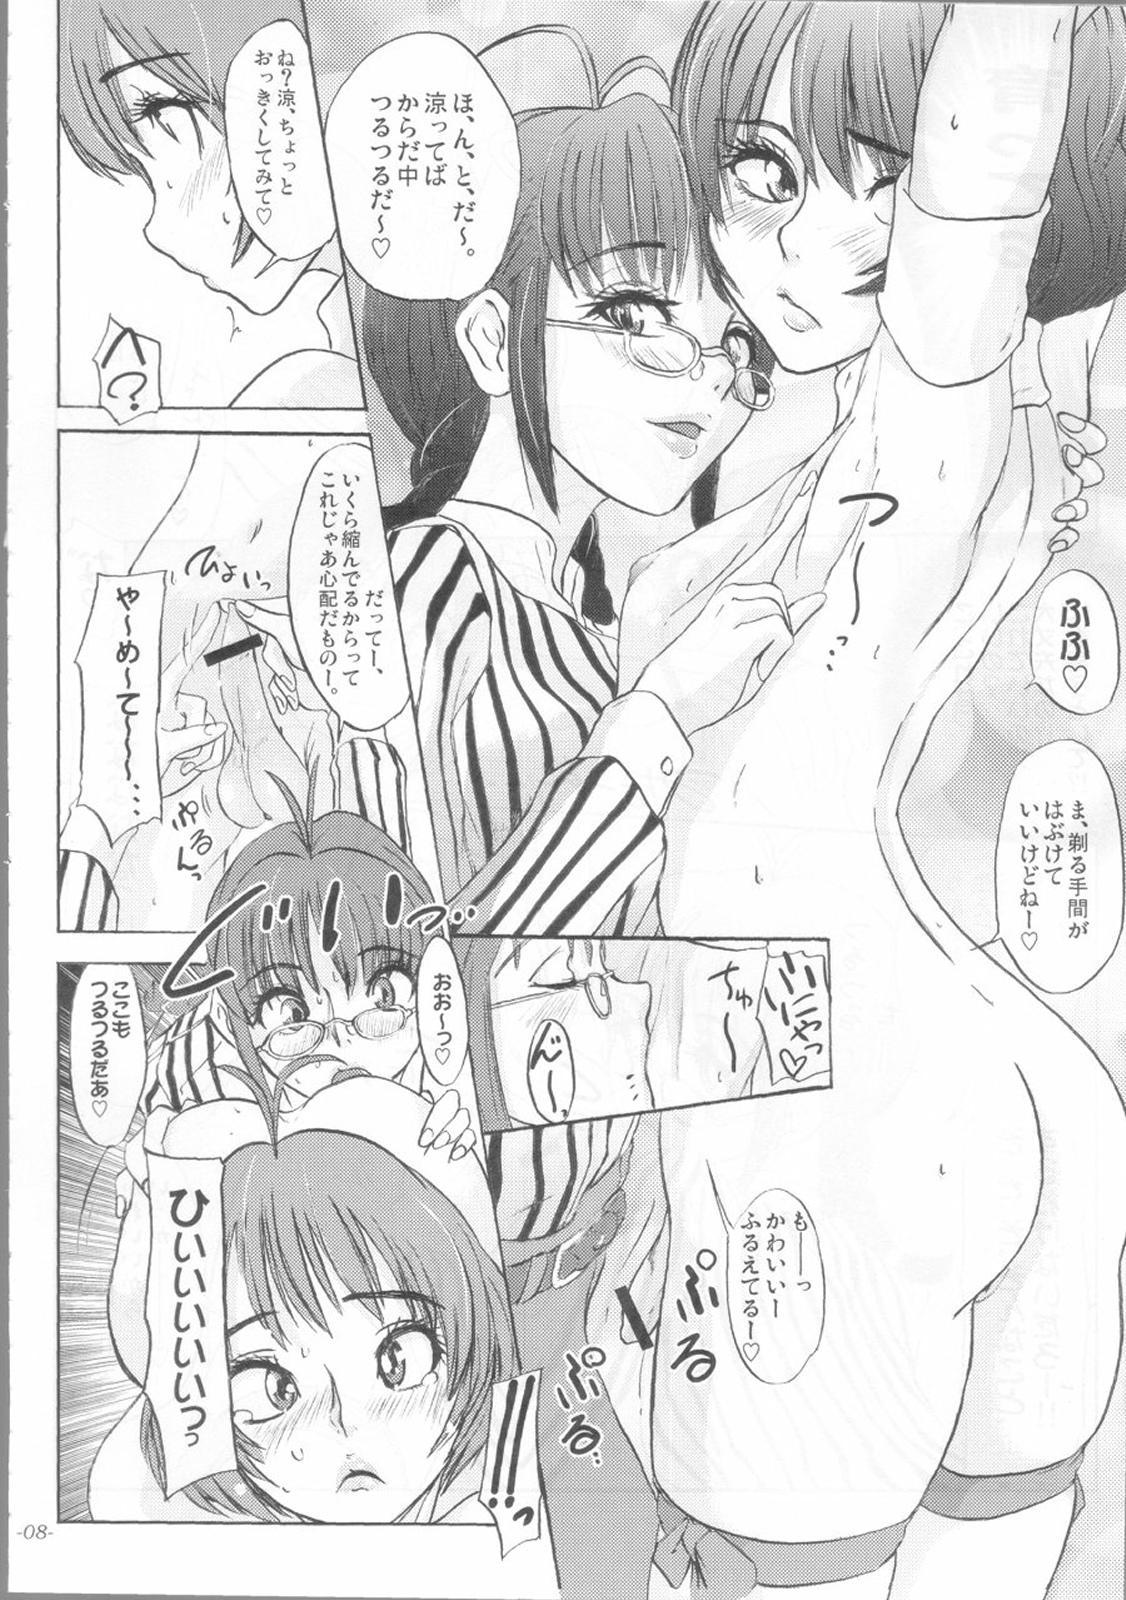 Gordibuena Kaikin!! Oh! tin tin Idol - Ryo's squirt show - The idolmaster Morrita - Page 9